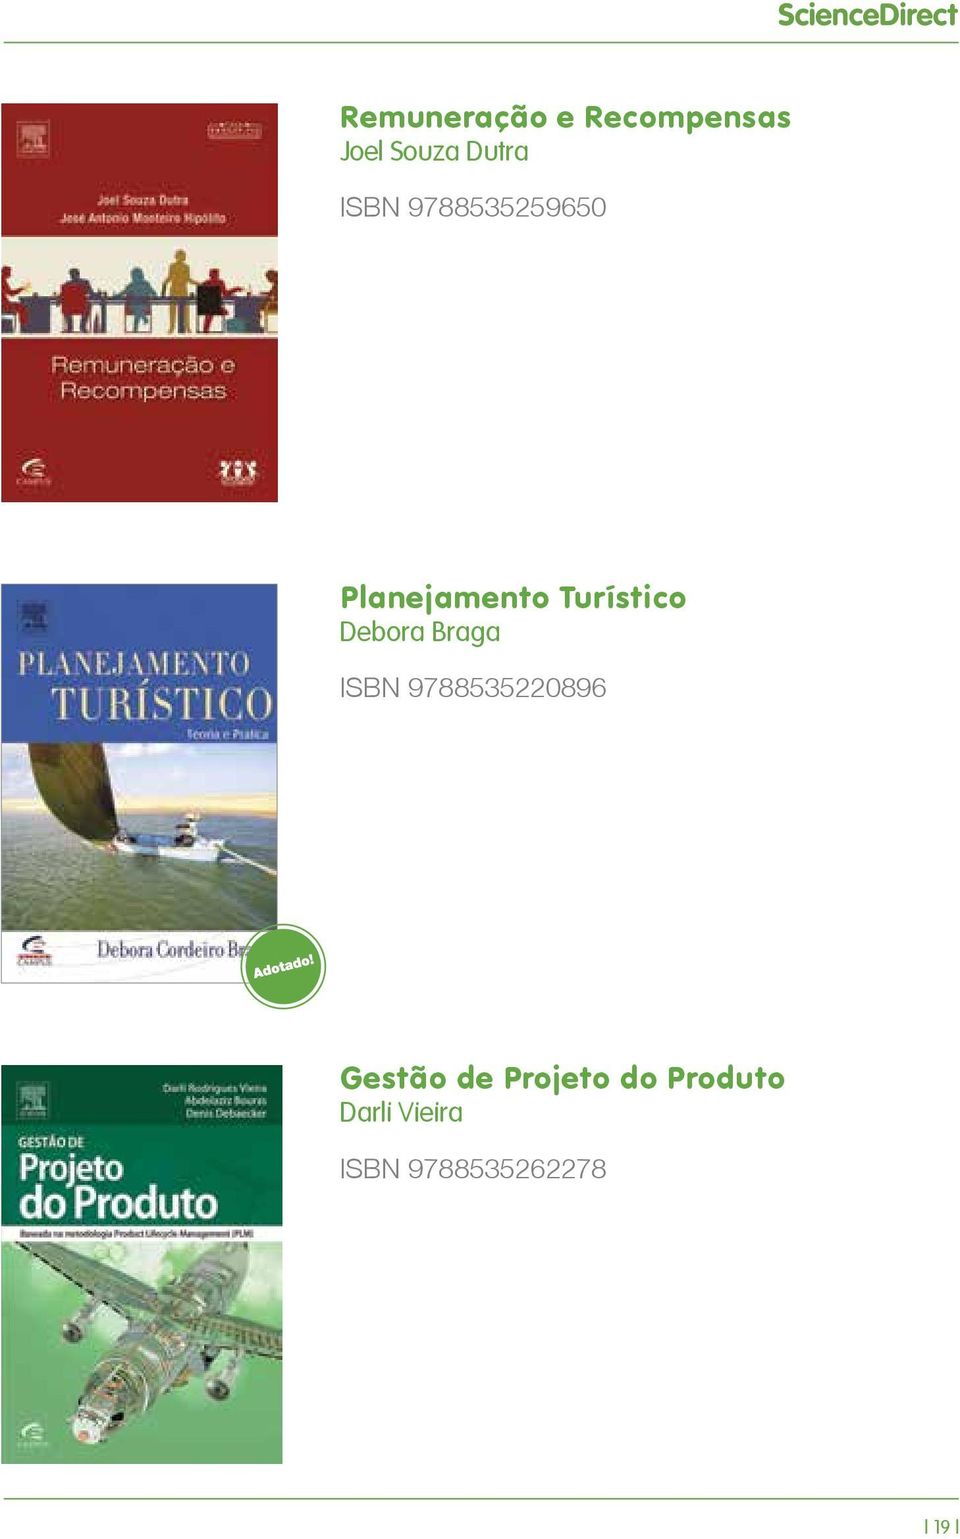 Debora Braga ISBN 9788535220896 Gestão de